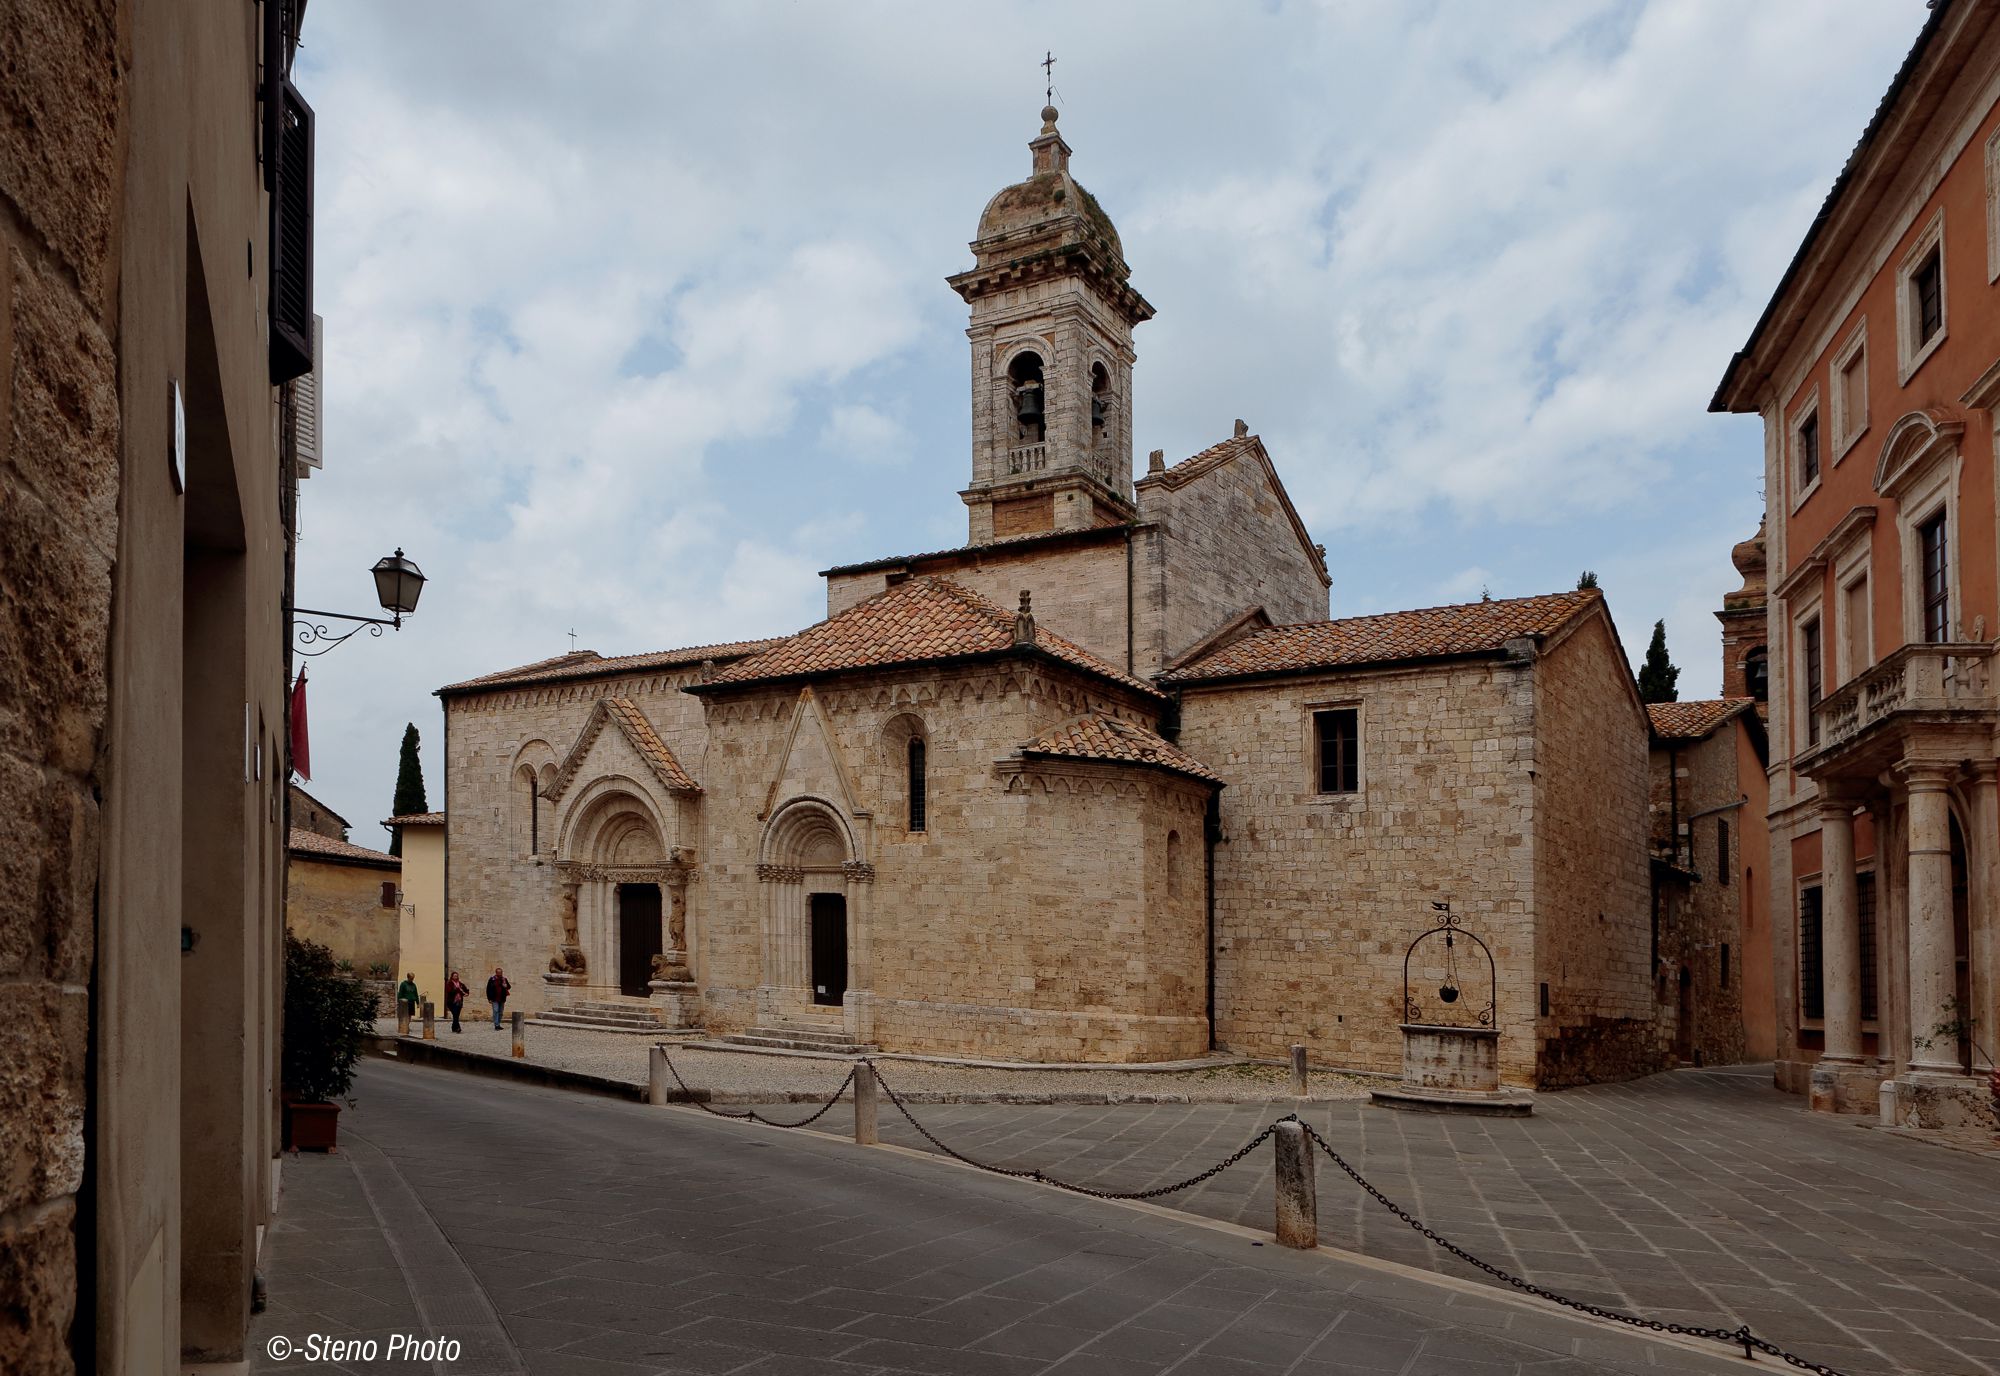 Church of Saints Quirico and Julietta...